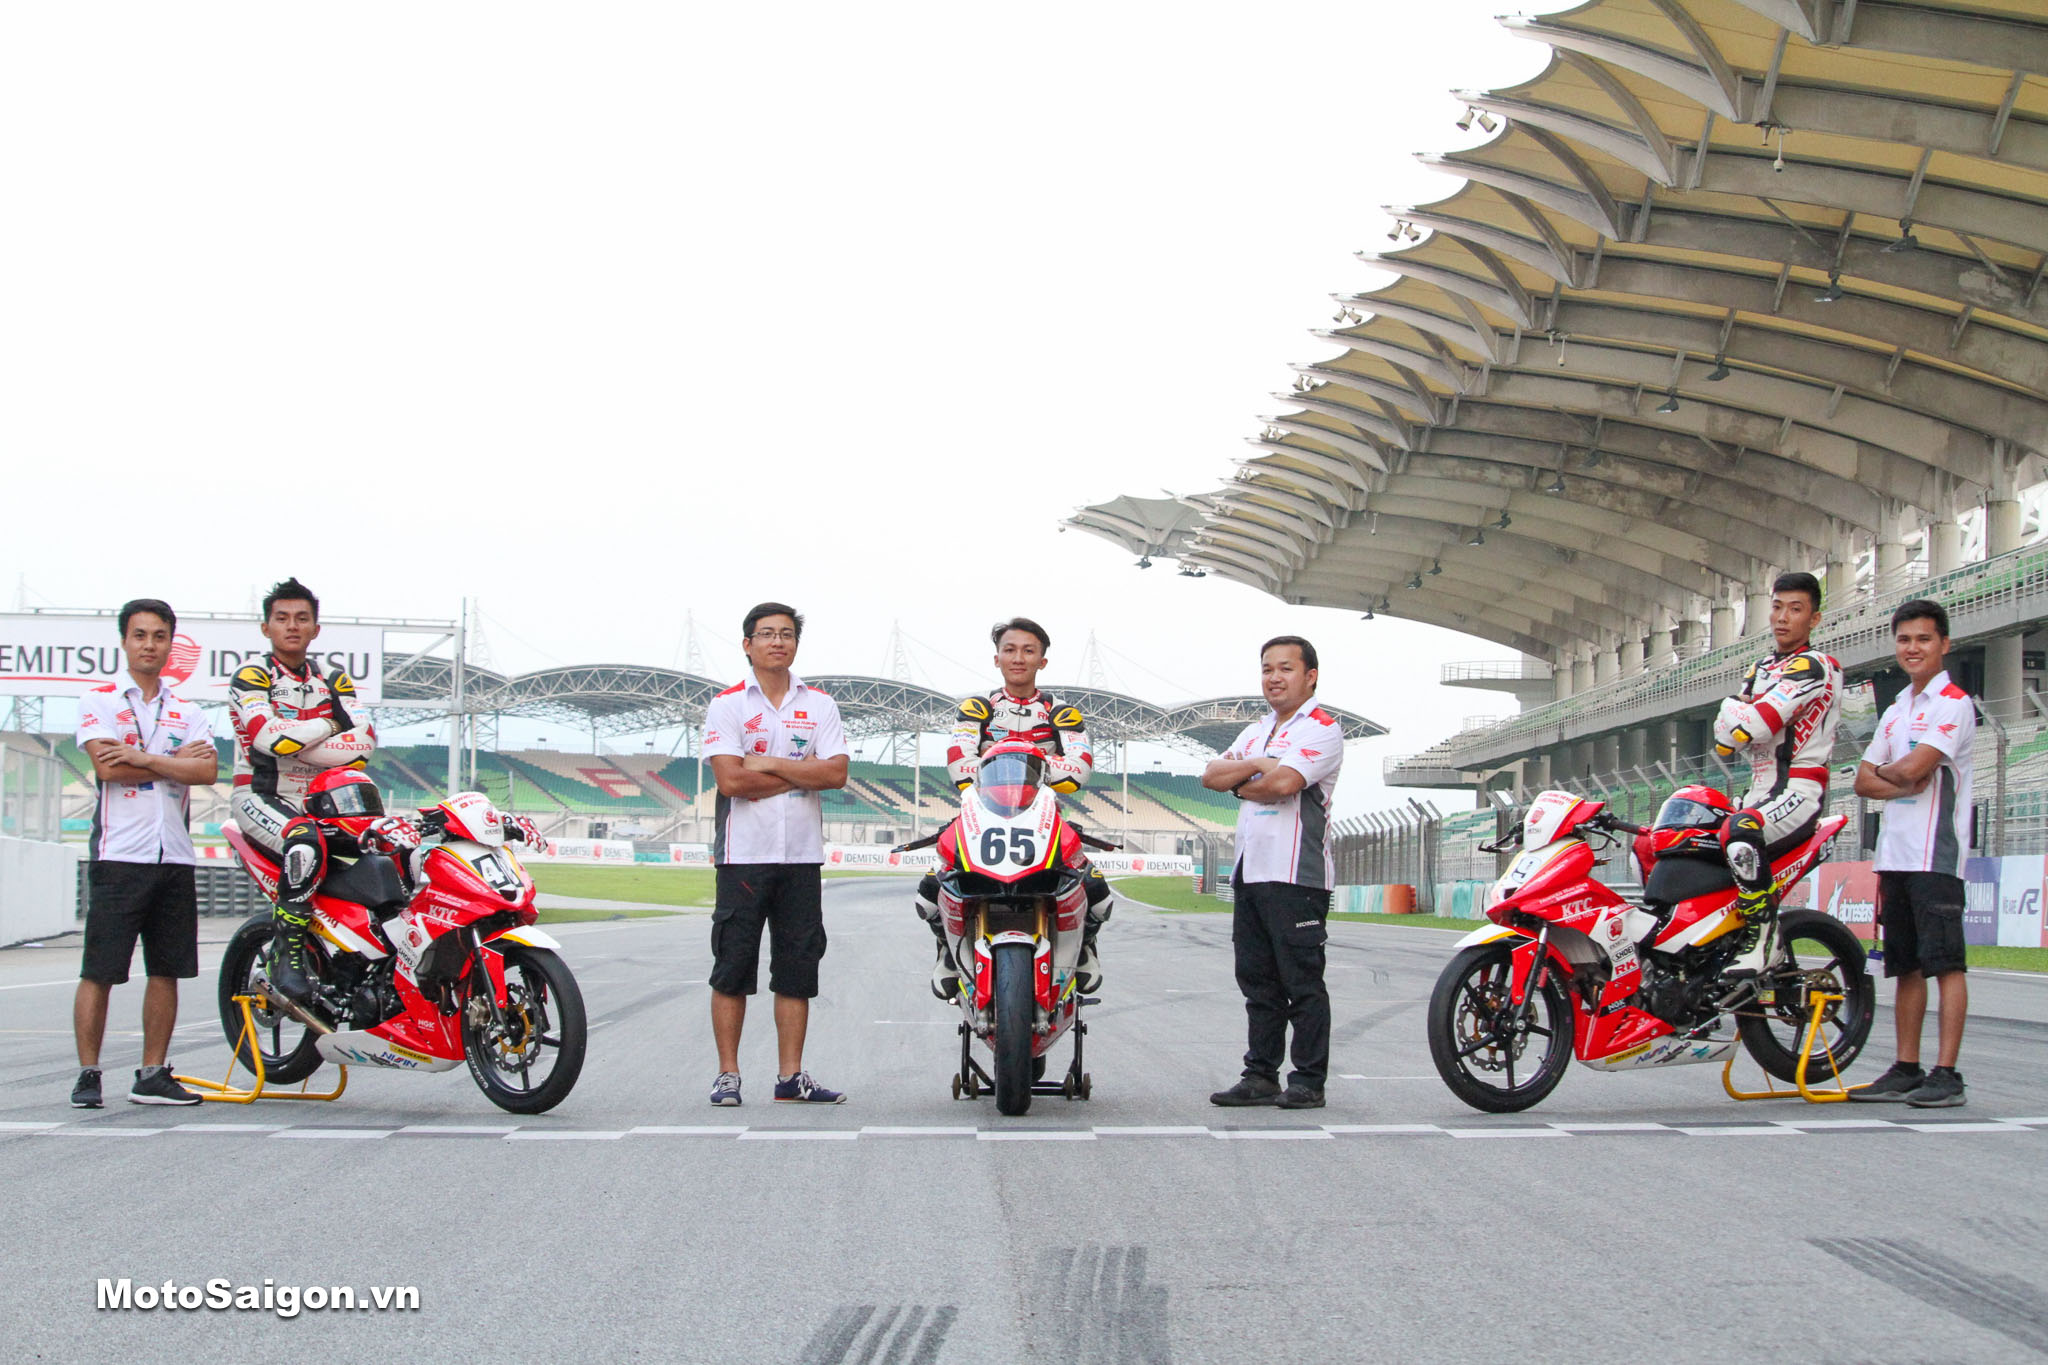 Honda Racing Vietnam là đội đua duy nhất của Việt Nam thi đấu tại các giải quốc tế